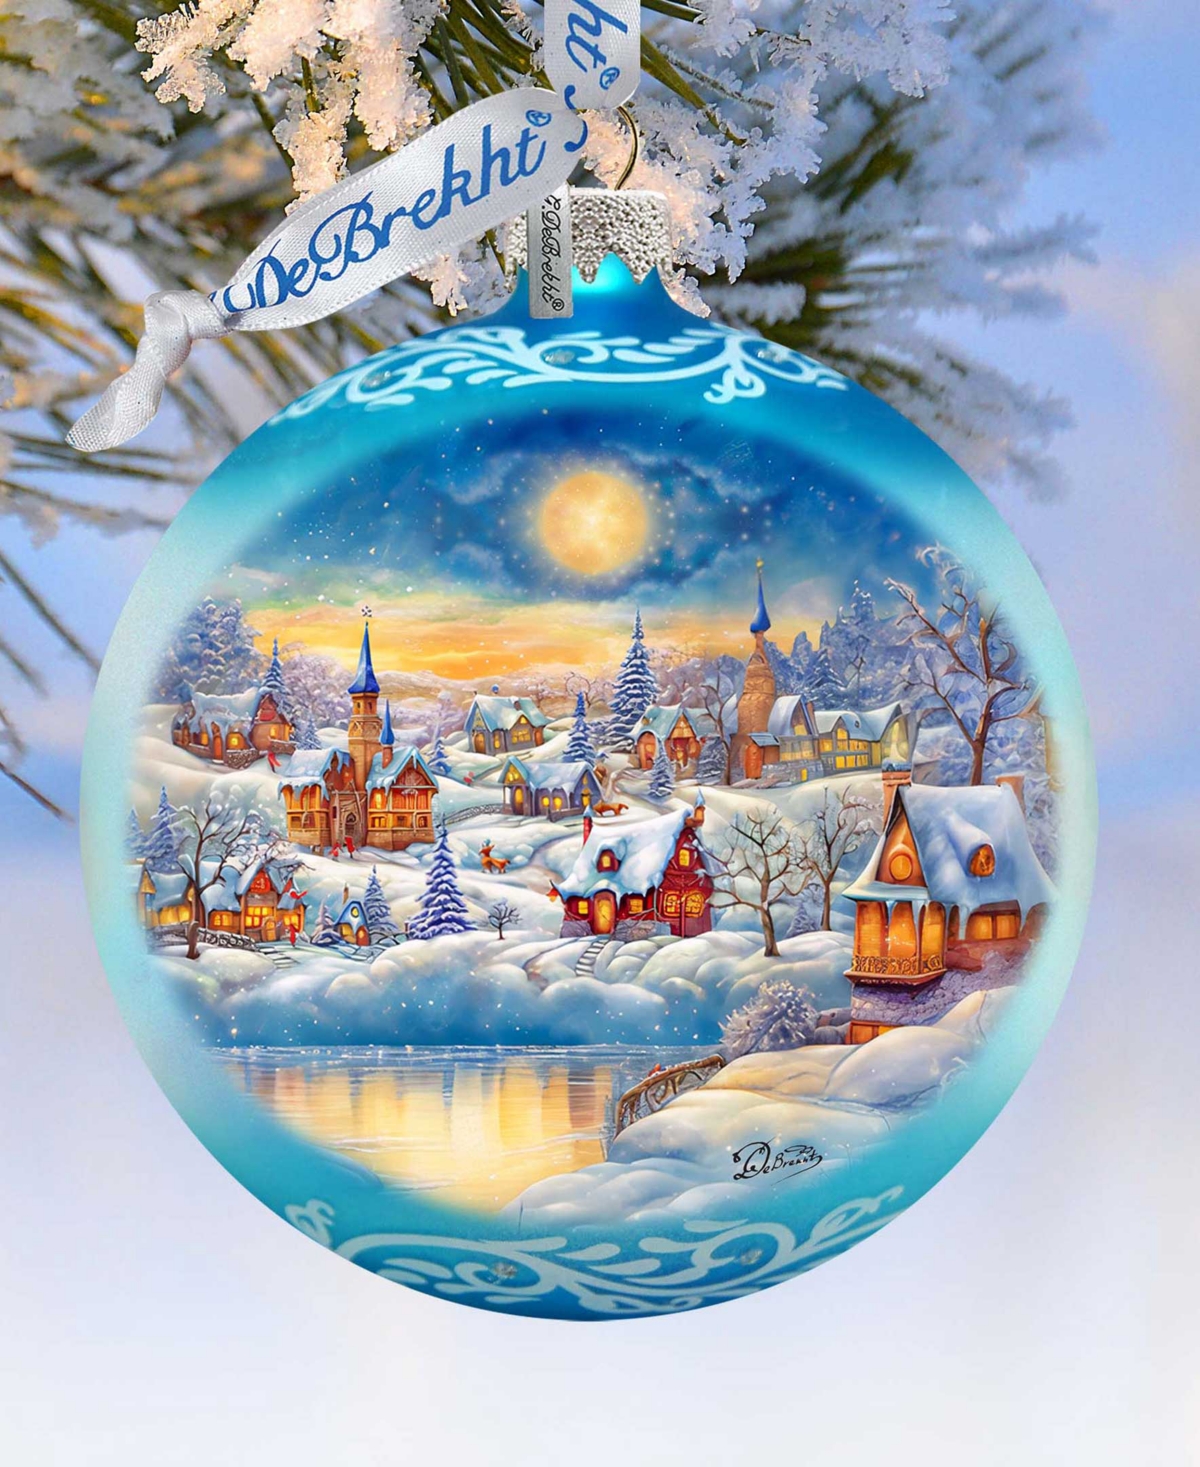 Designocracy Magic Winter Village Ball Mercury Glass Christmas Ornaments G. Debrekht In Multi Color